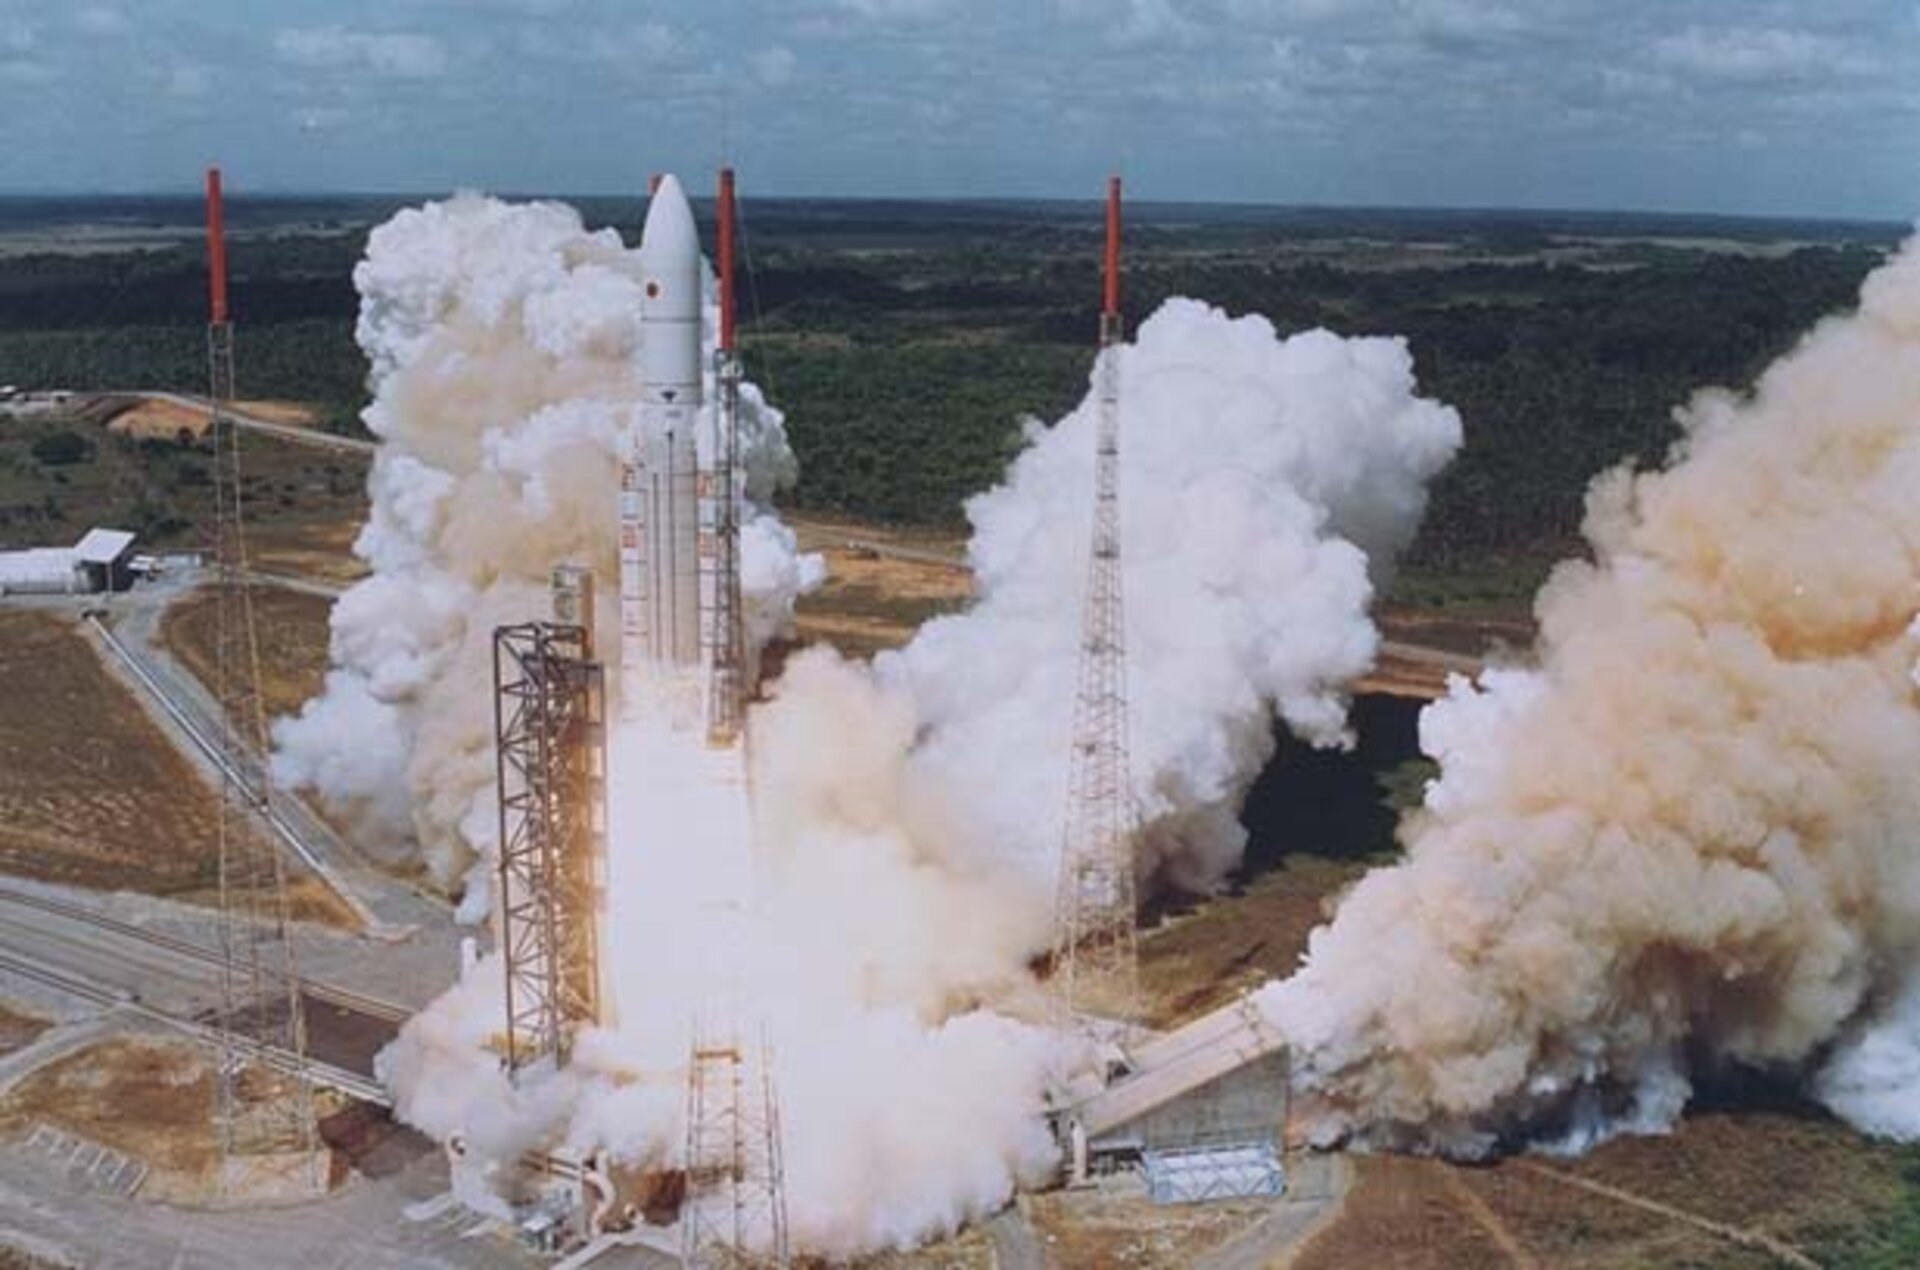 Ariane-502 launch